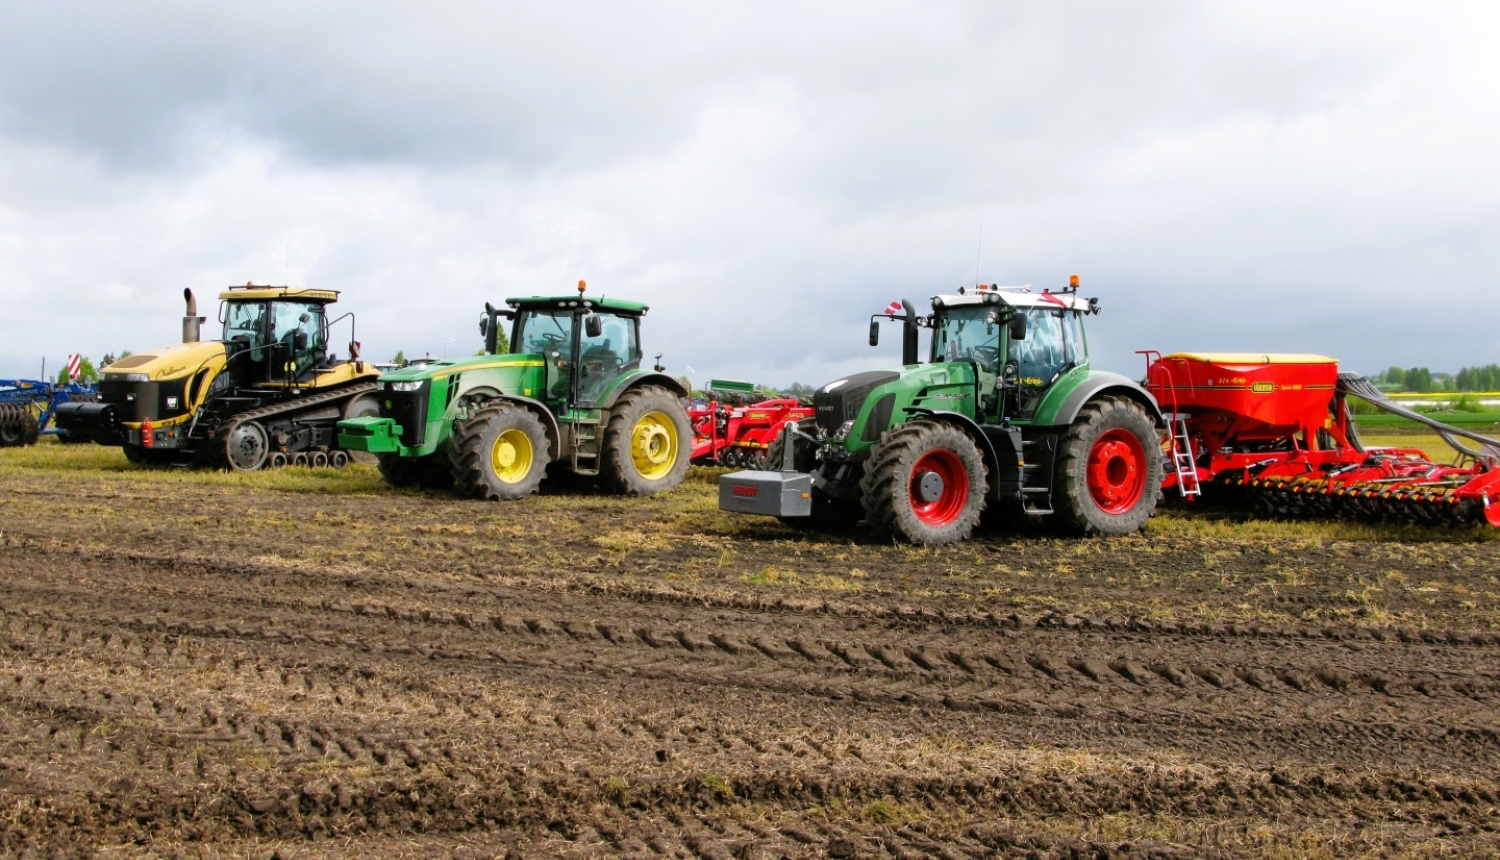 Trīs krāsaini traktori uz lauka ar piekabinātiem dažādiem agregātiem